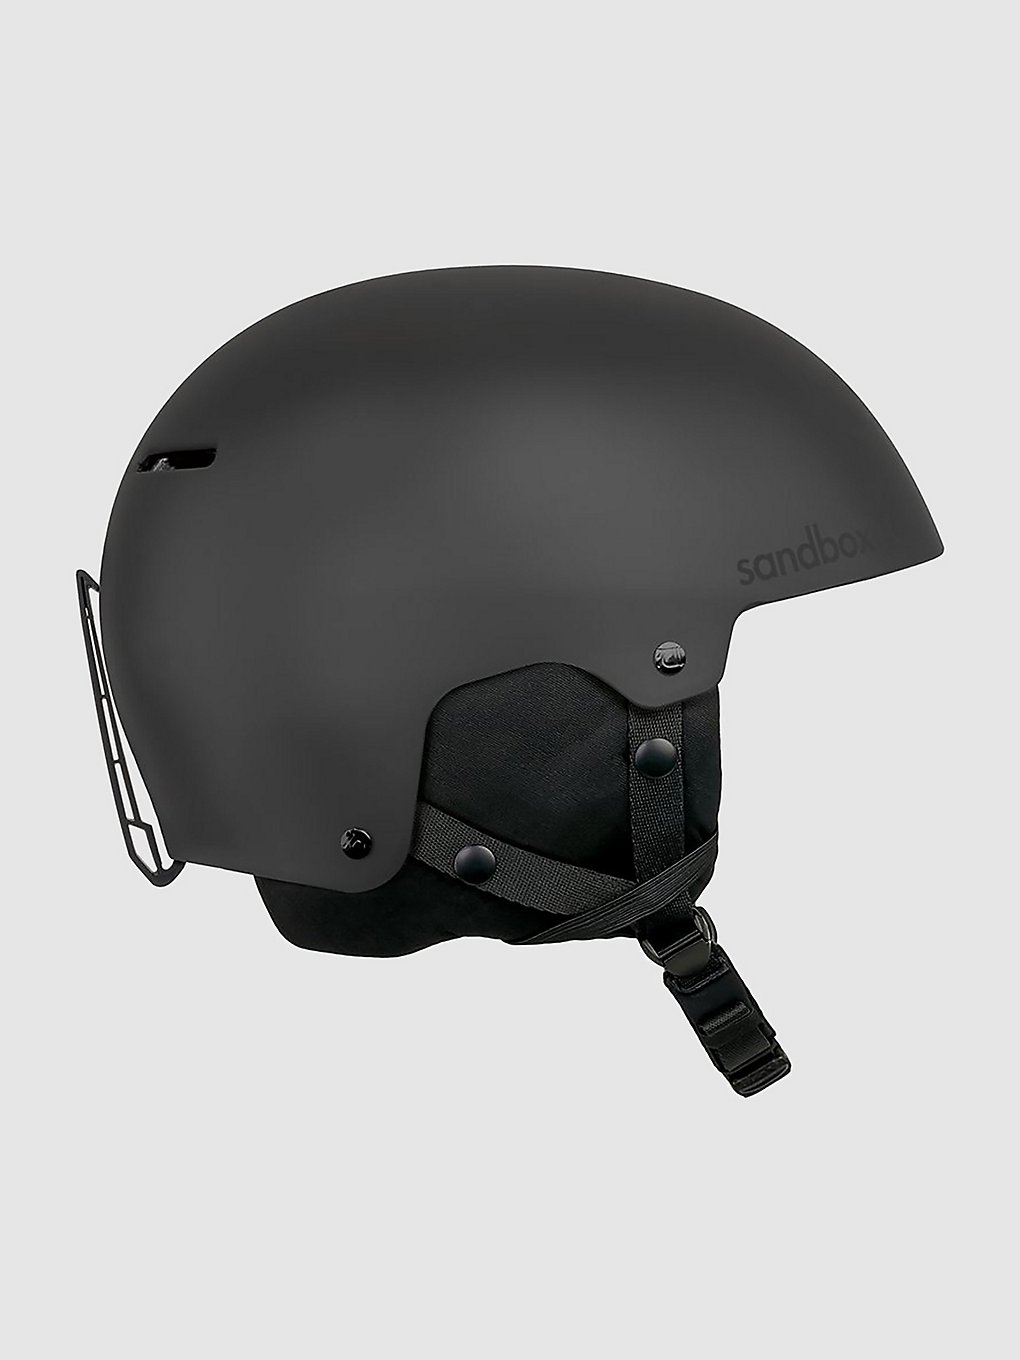 Sandbox Icon Helm black (matte) kaufen